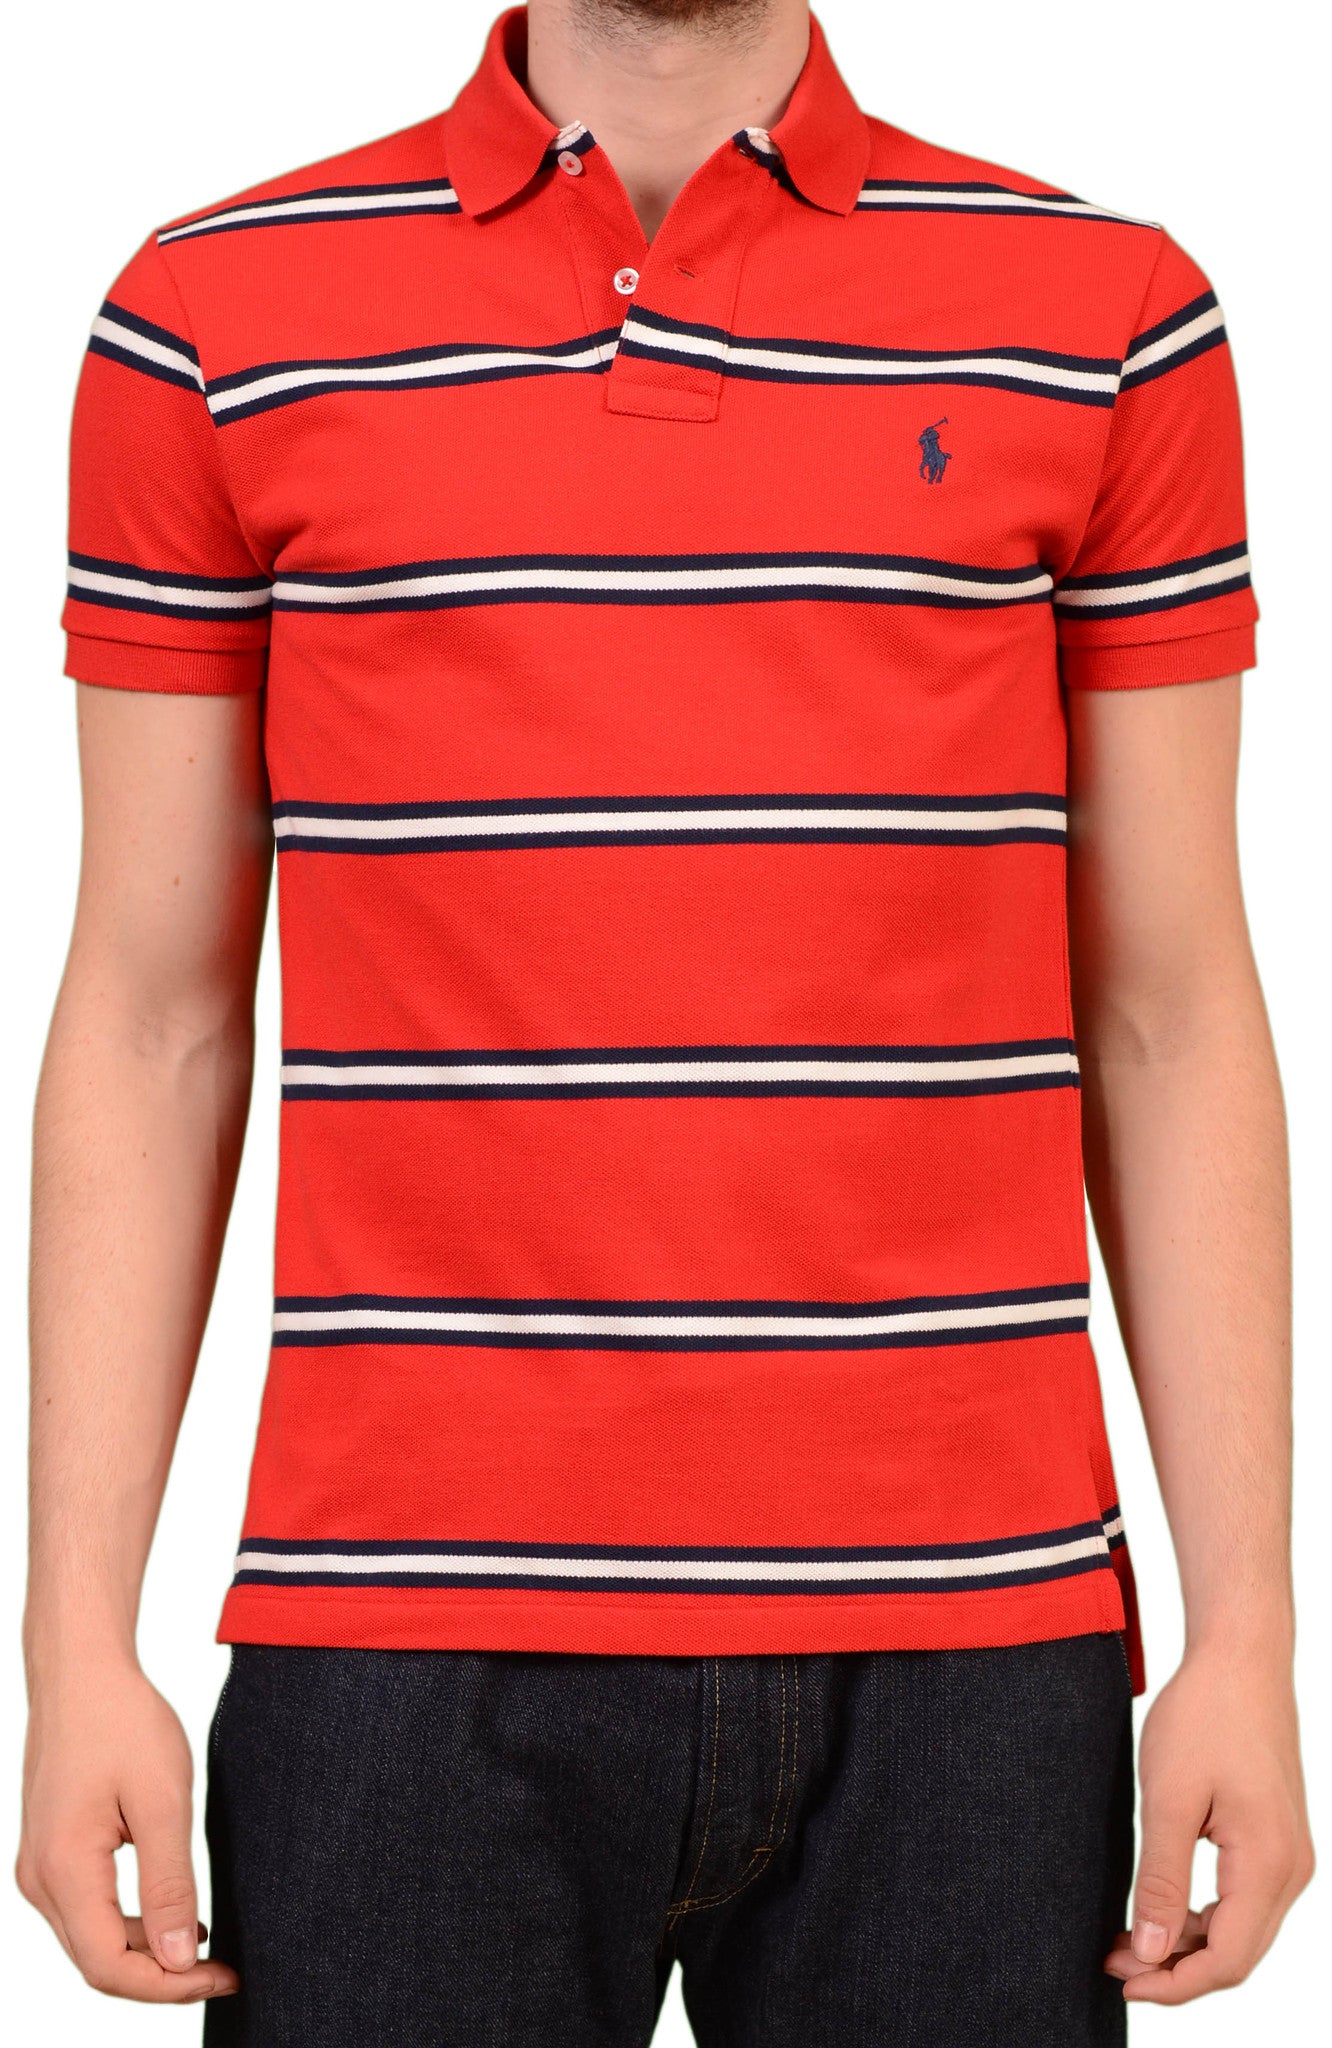 polo ralph lauren red striped shirt